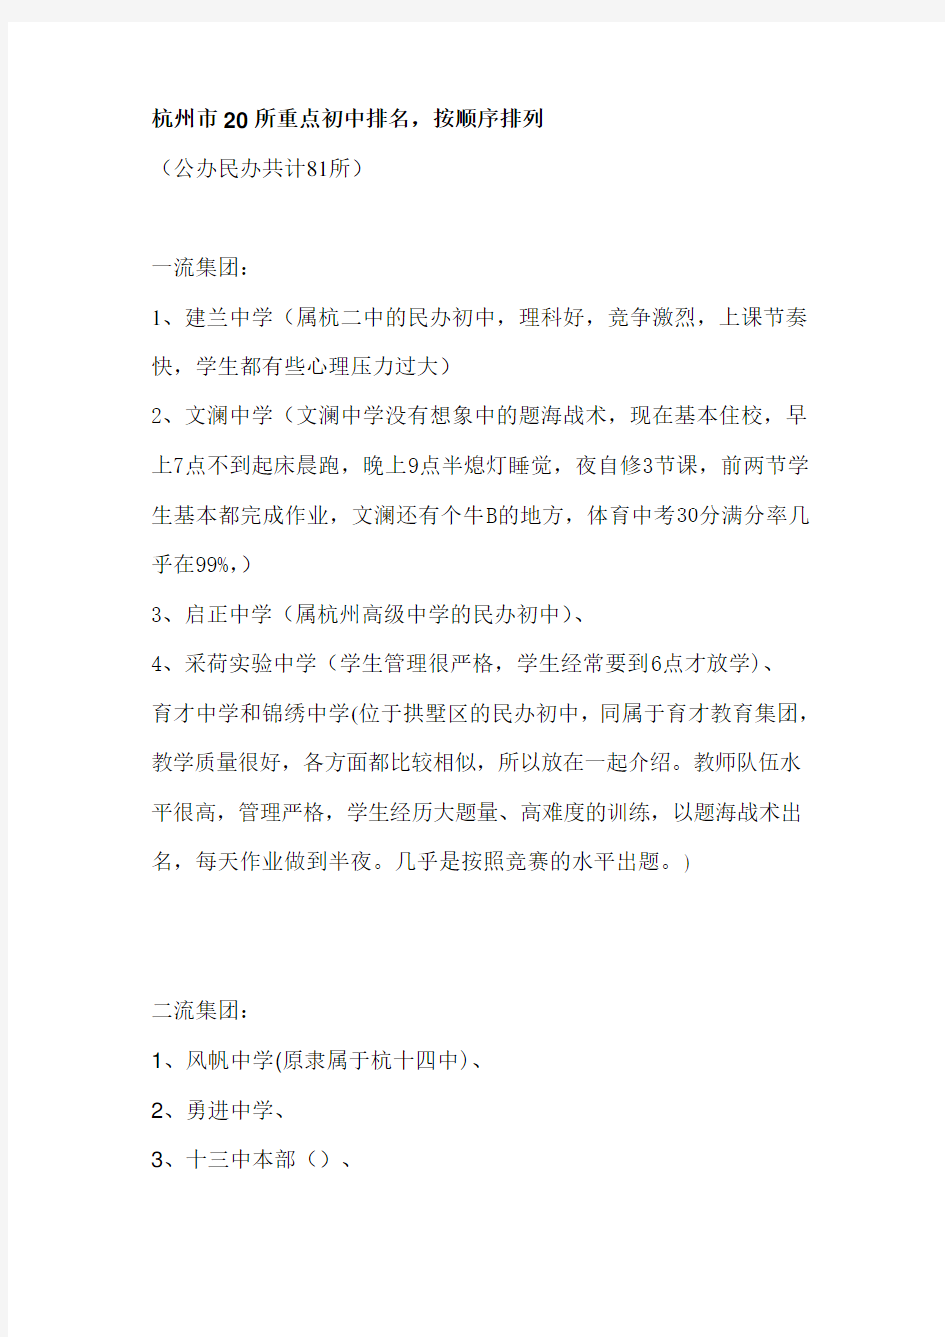 本人整理过-杭州市20所重点初中排名,按顺序排列